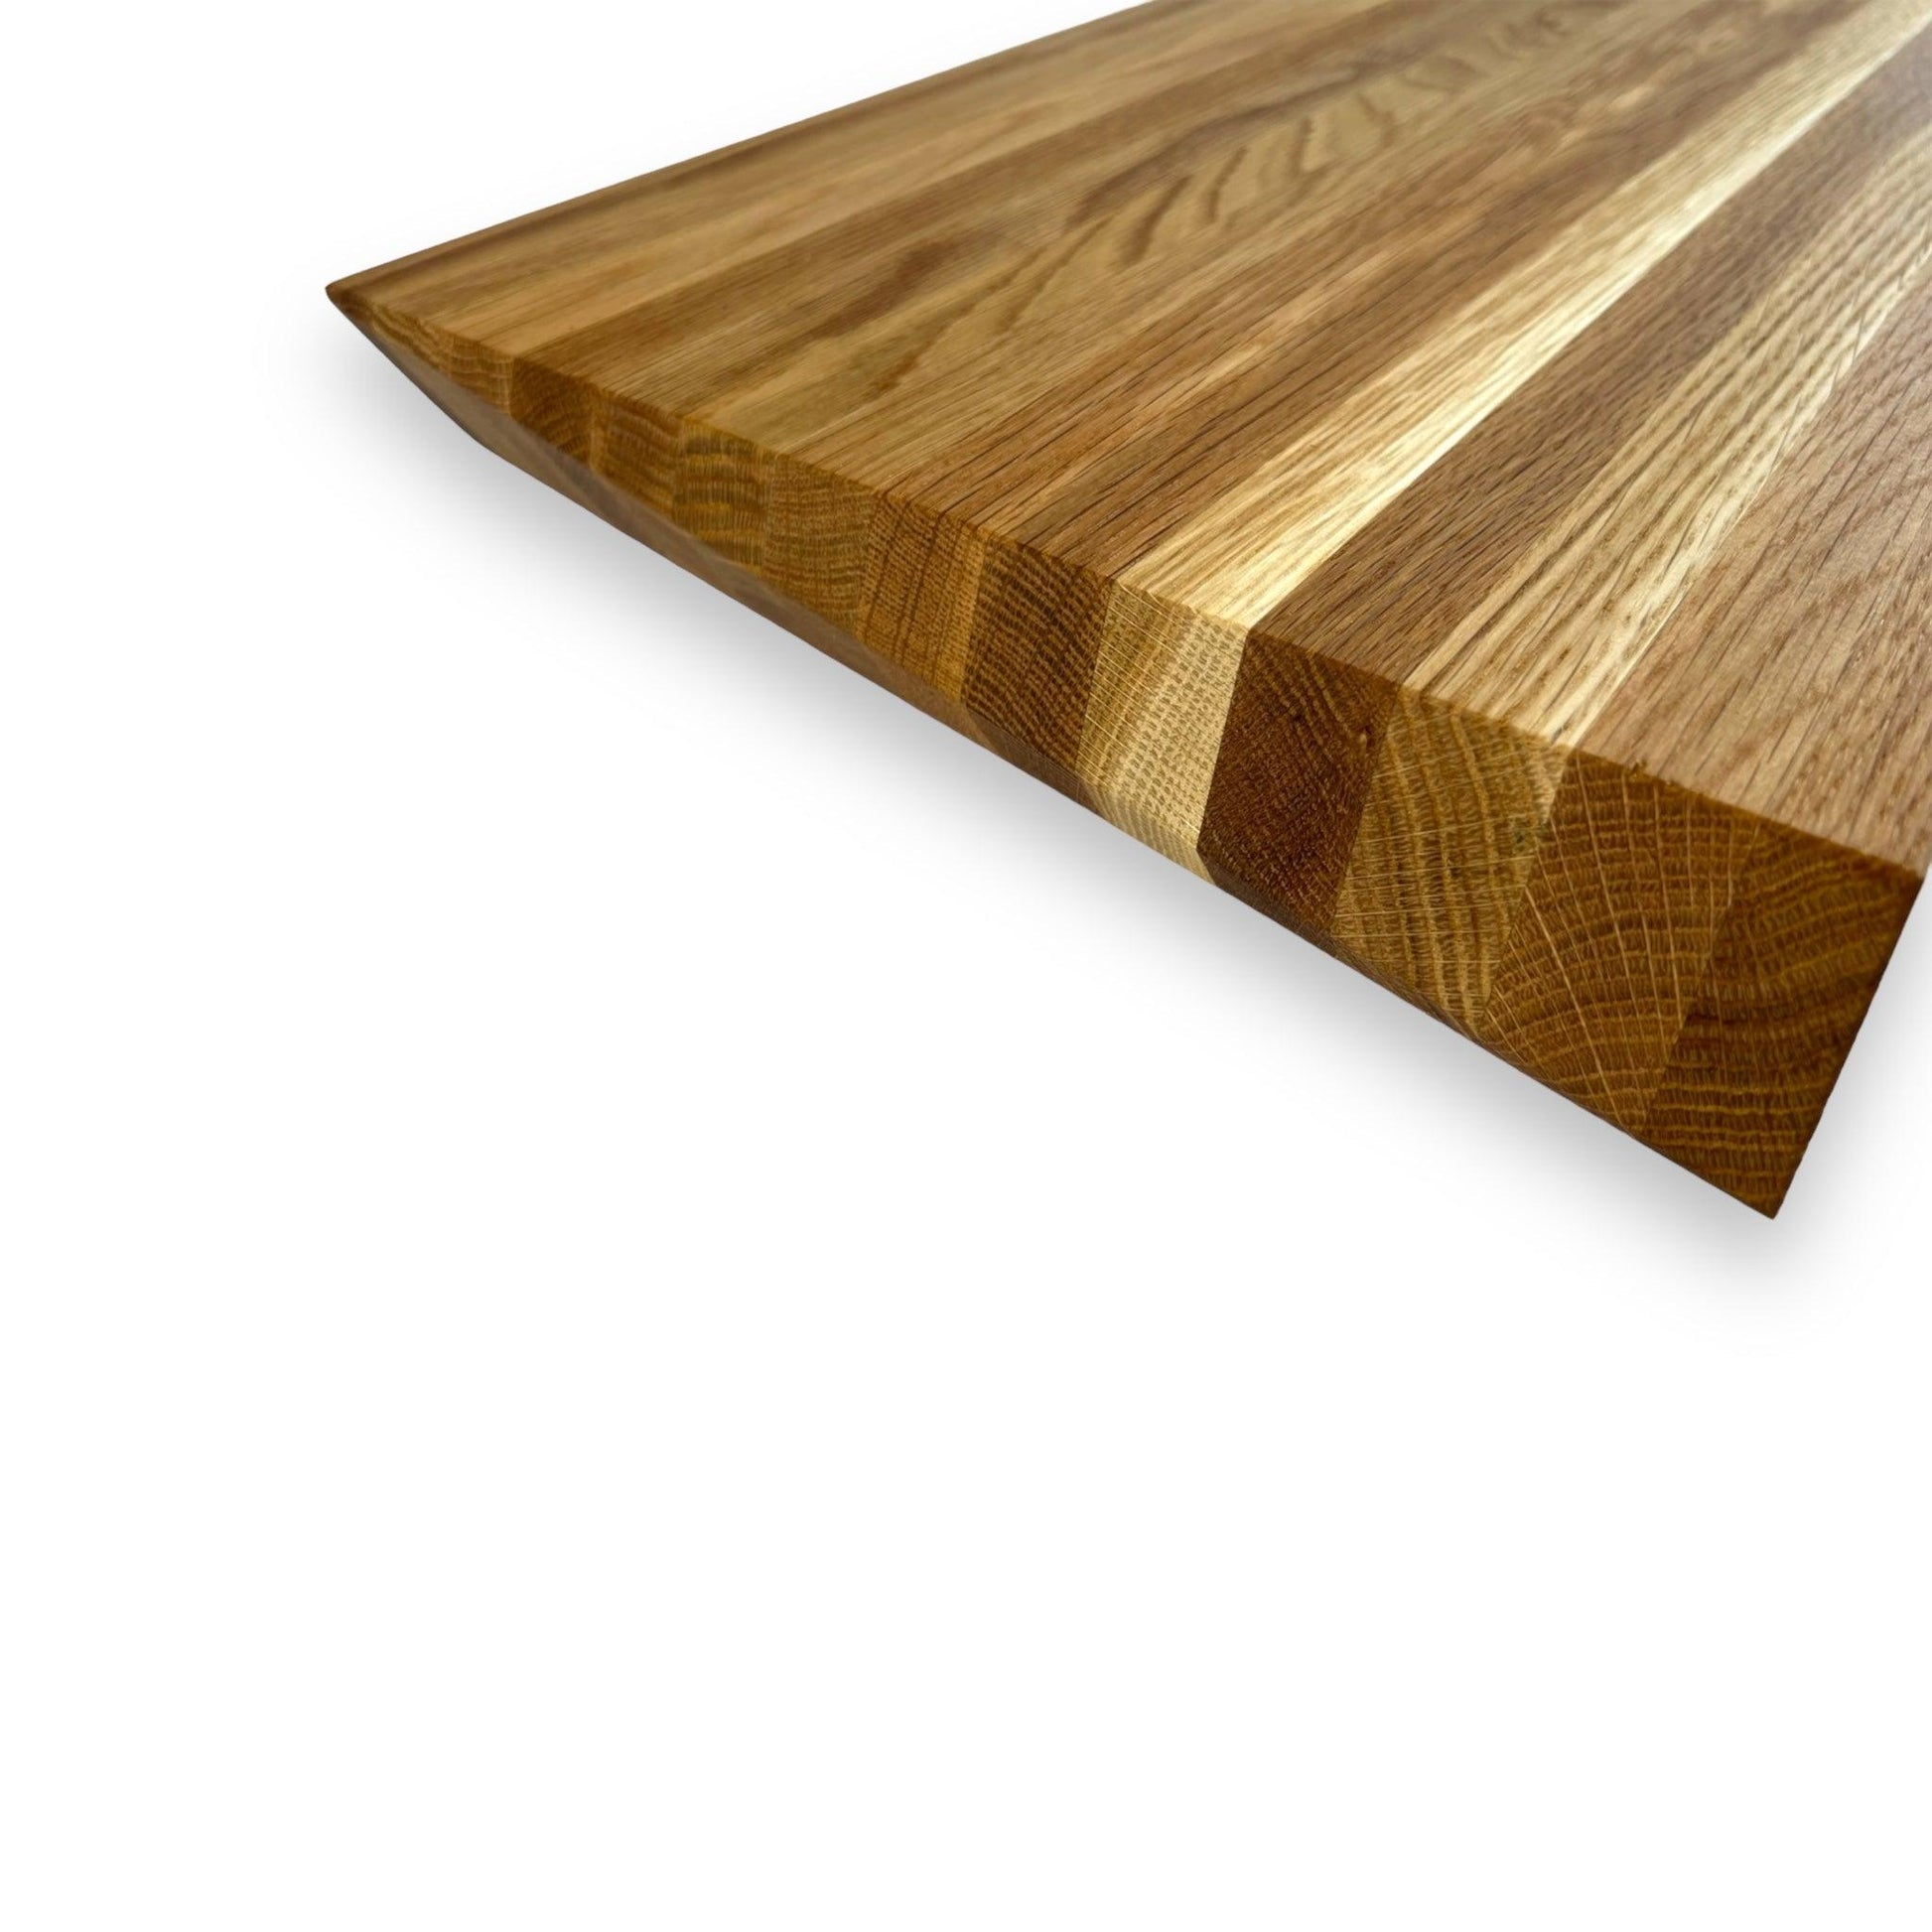 2" White Oak Z-shaped cutting board - BOISWOOD